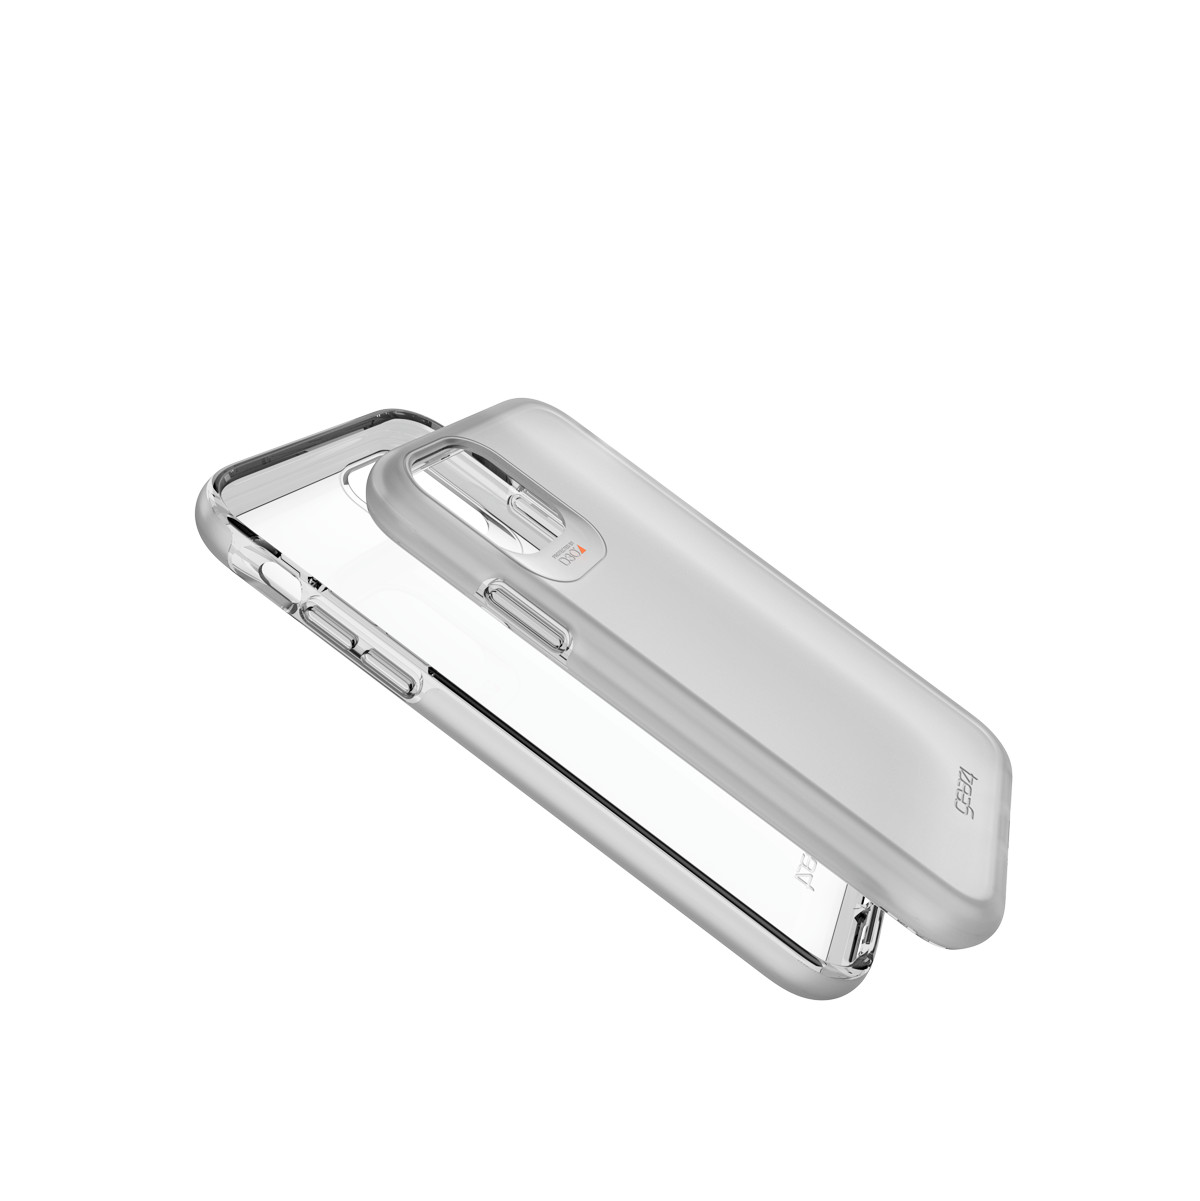 Ốp lưng Gear4 Hampton chống sốc lên đến 4m - Công nghệ độc quyền D3O - Mỏng nhẹ thời trang dành cho iPhone 11- Hàng Chính Hãng